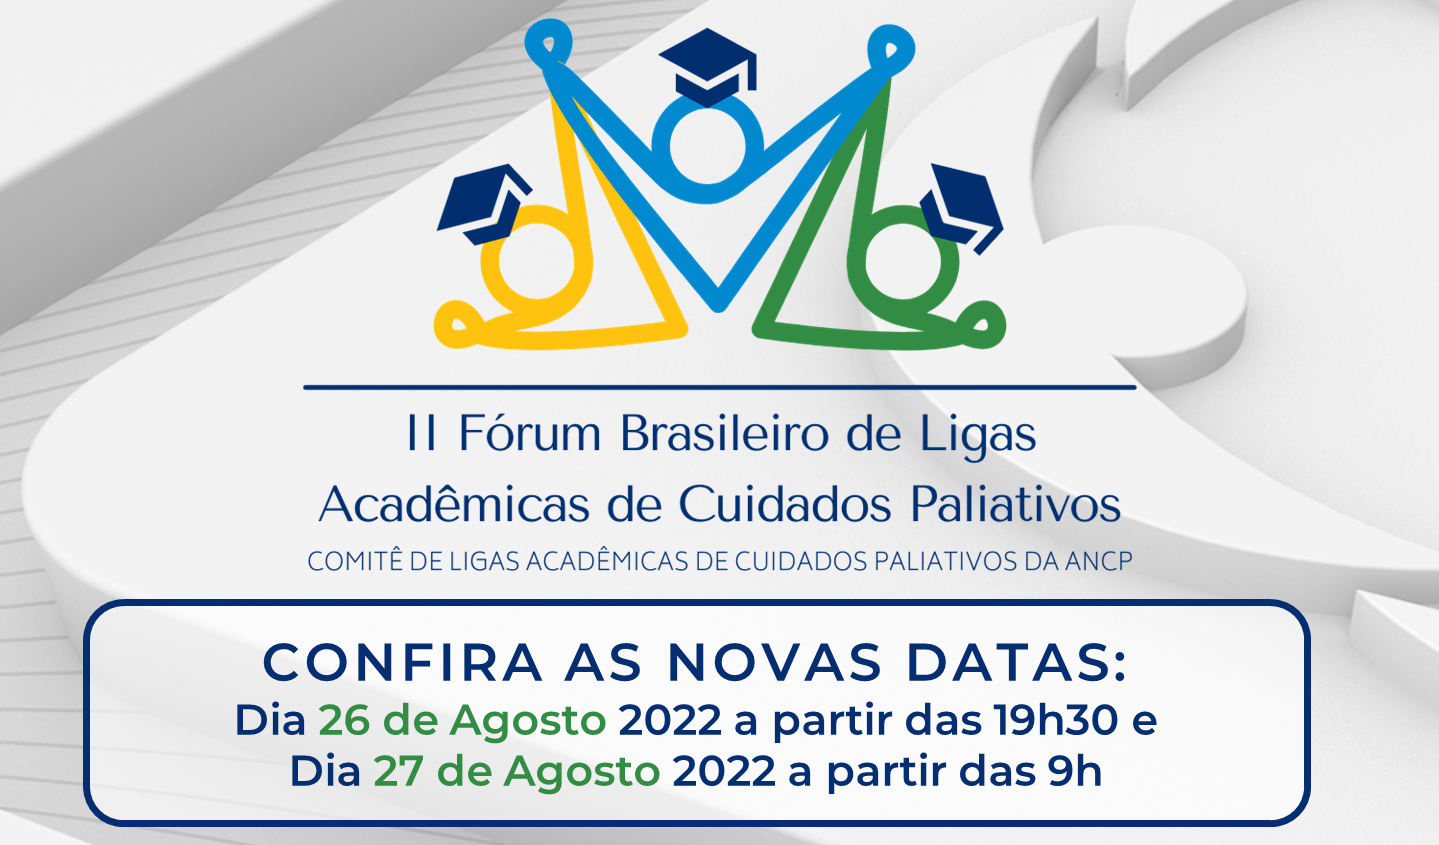 Comitê de Ligas Acadêmicas da ANCP divulga nova data do II Fórum Brasileiro das Ligas Acadêmicas de Cuidados Paliativos